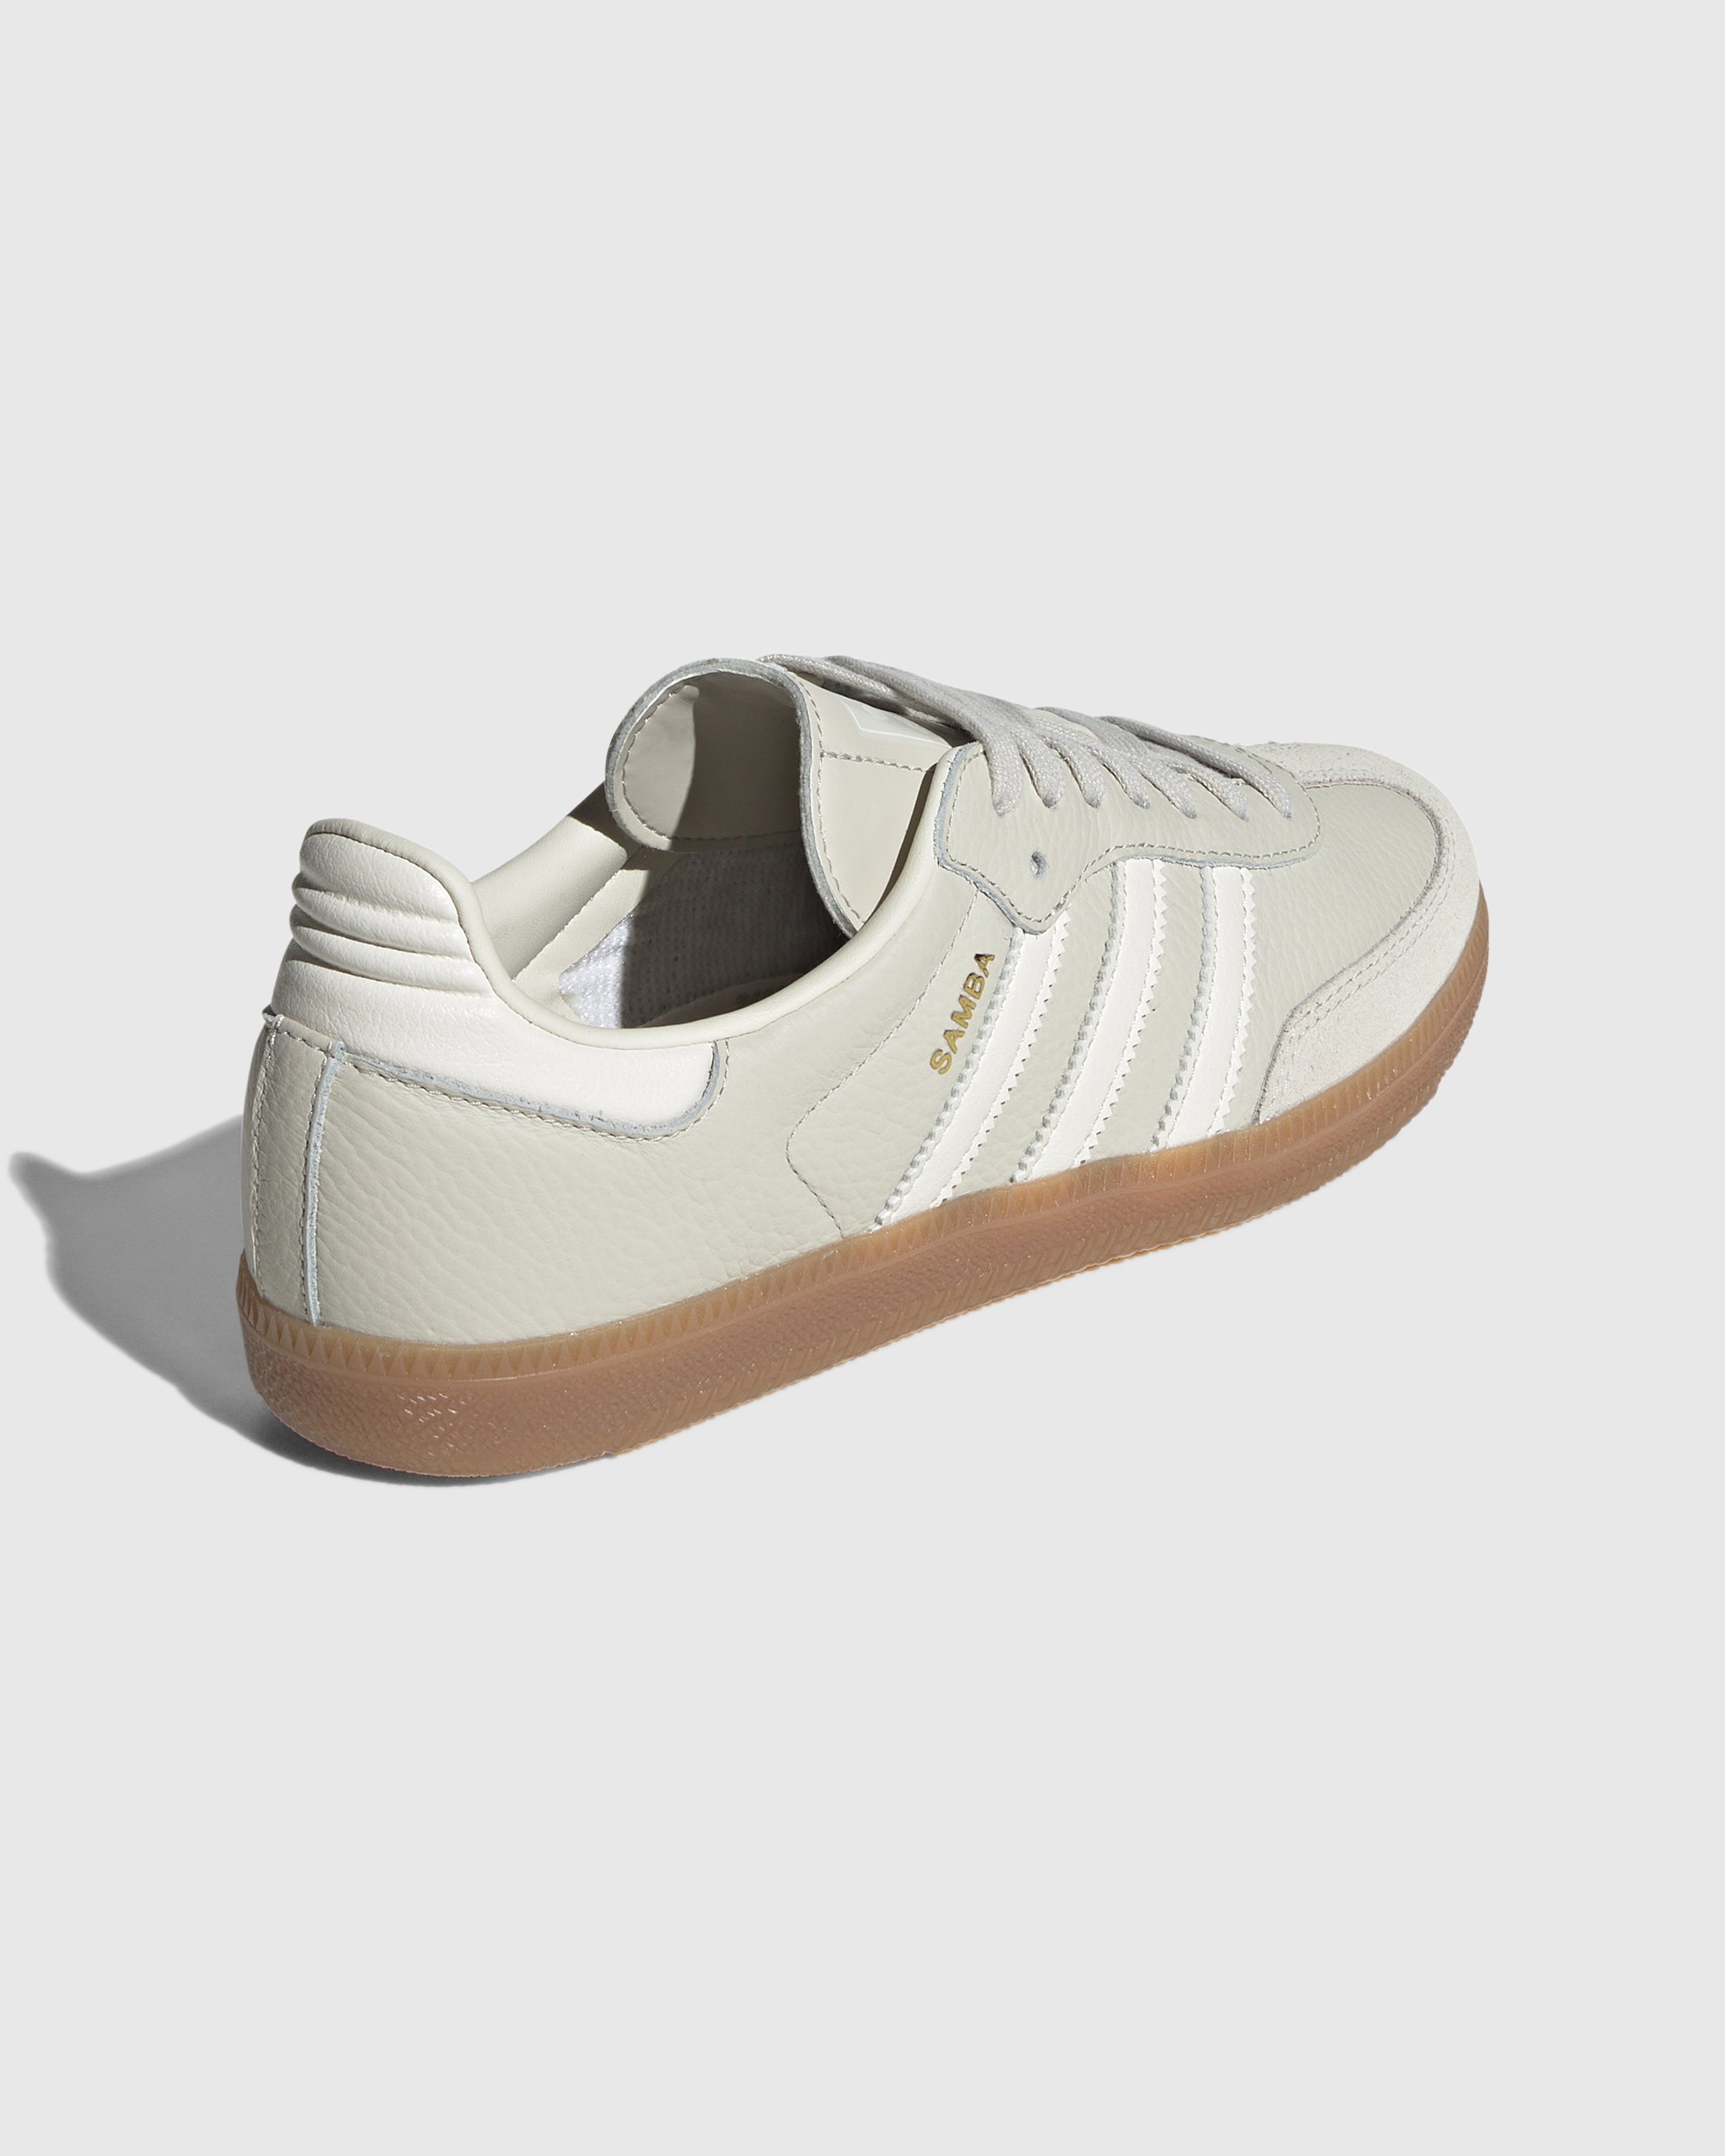 Adidas - Samba OG White Aluminium - Footwear - White - Image 4